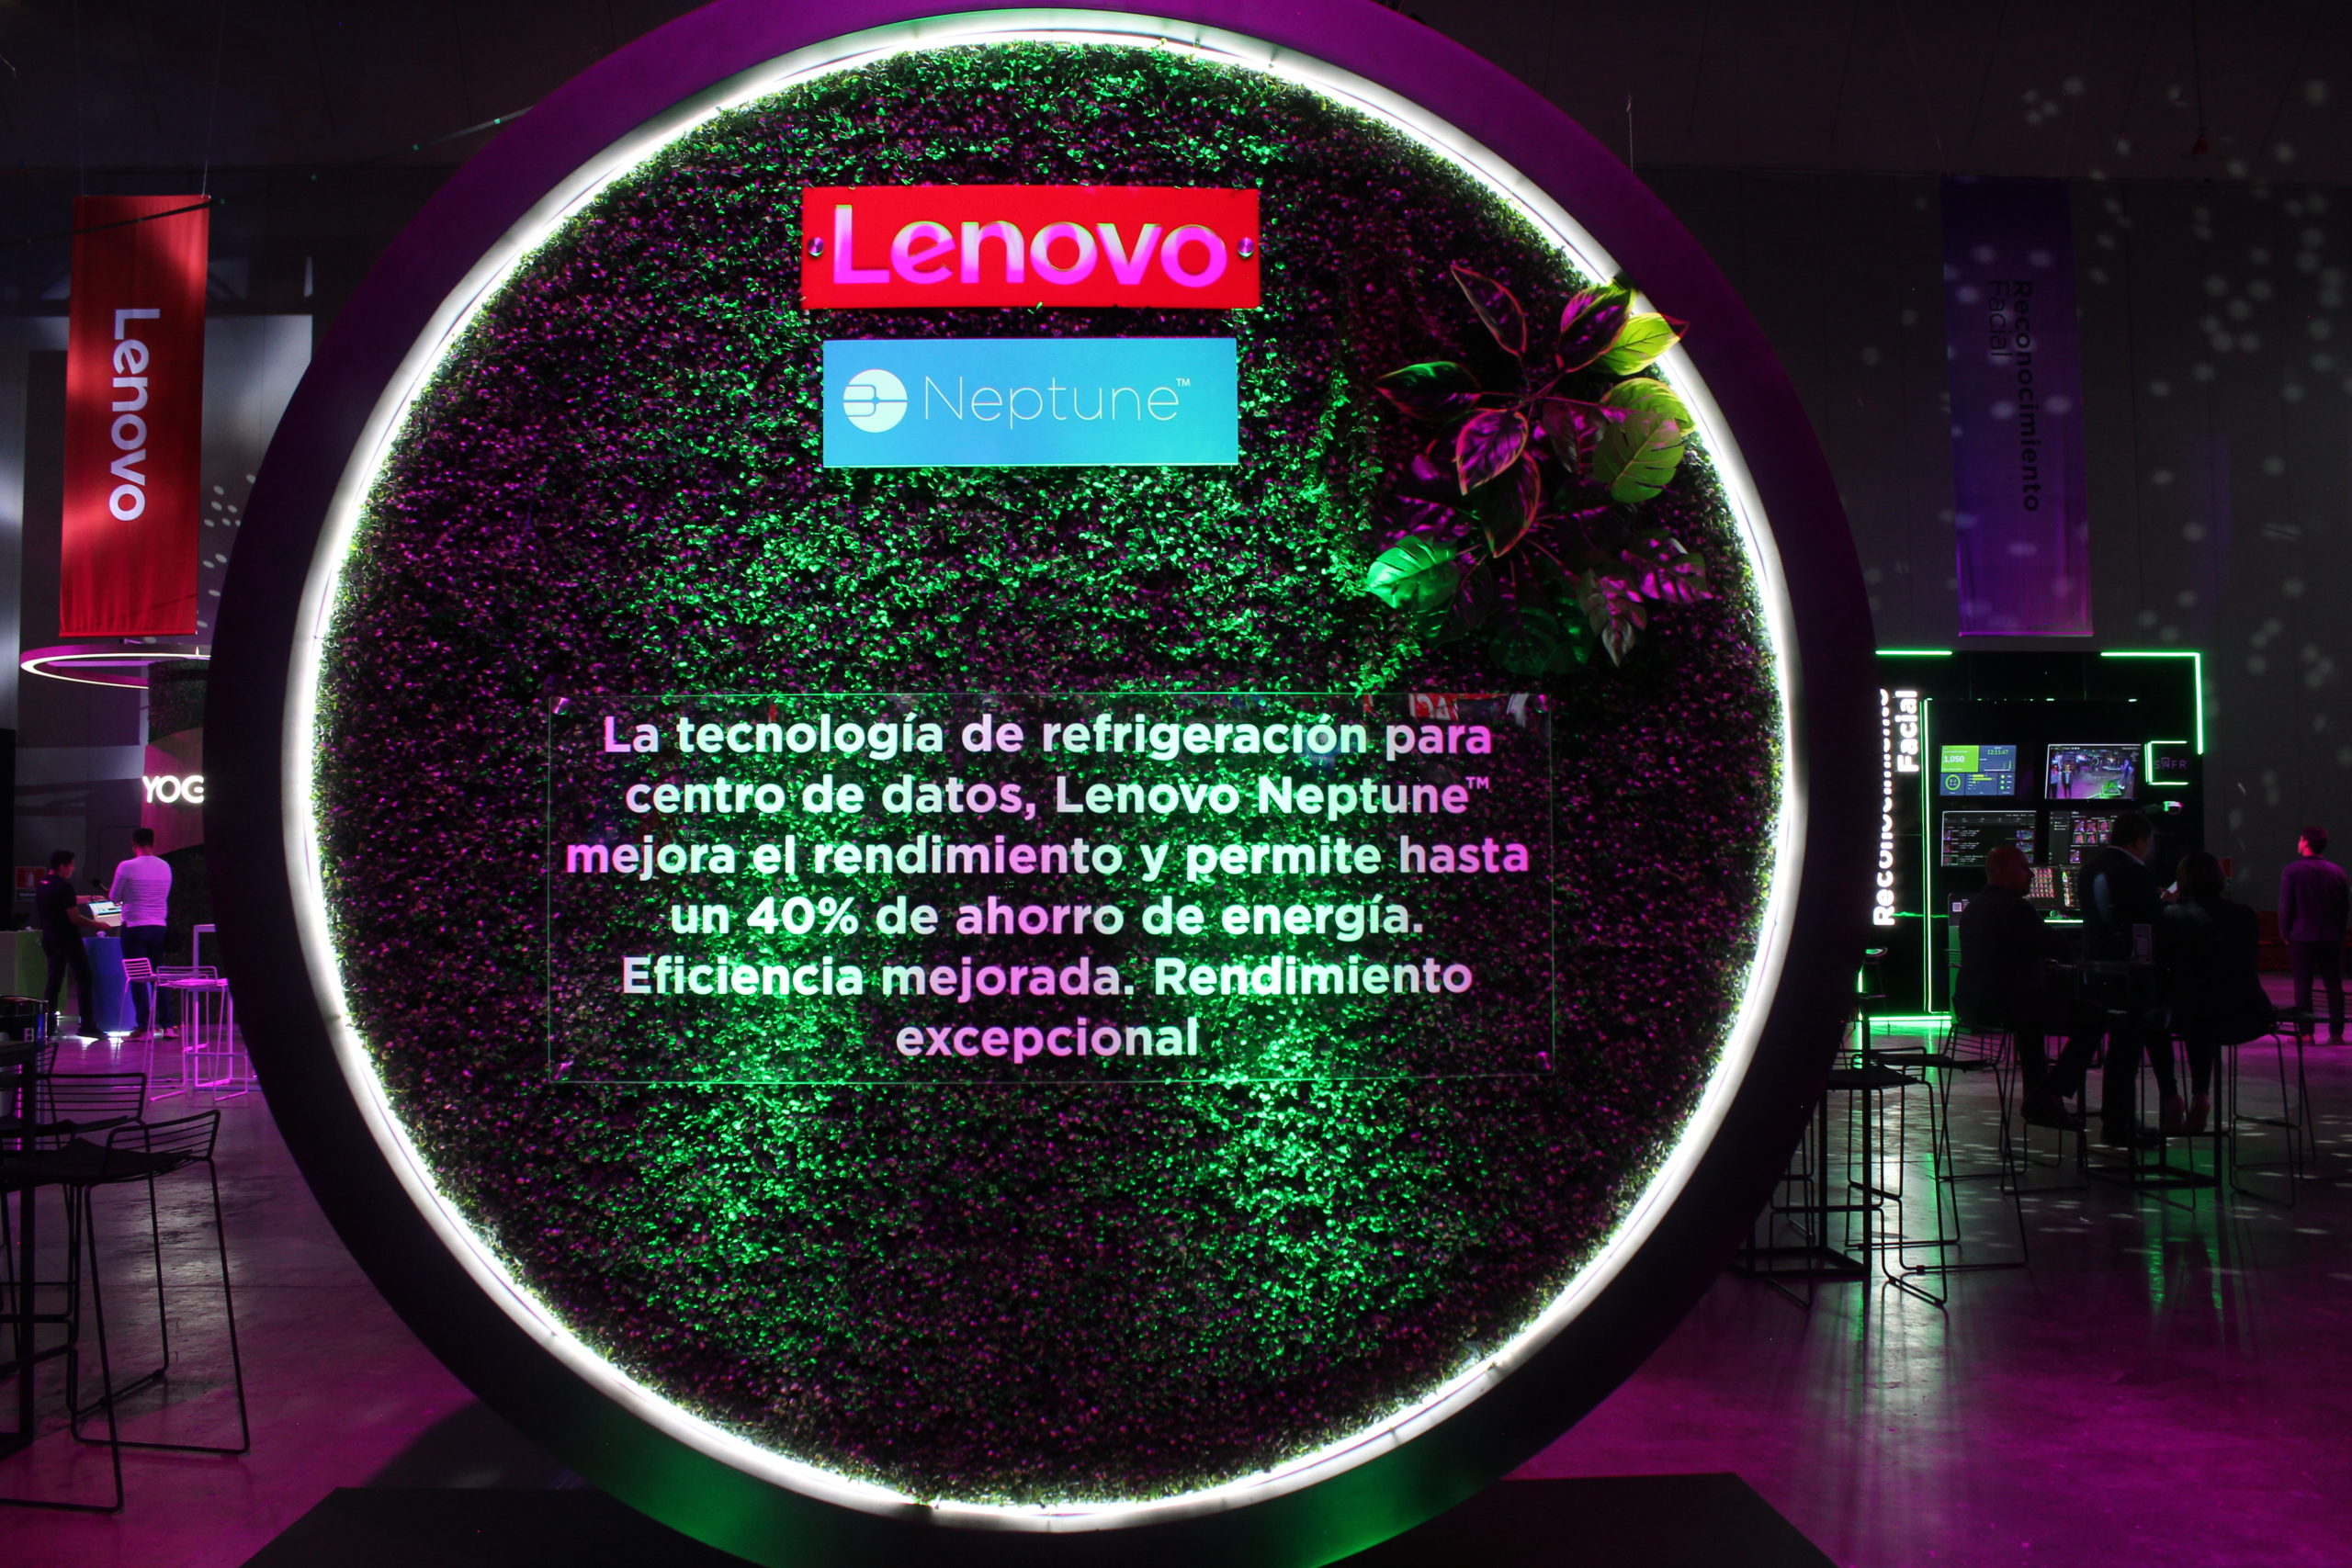 Soluciones integradas y respaldo al canal por parte de Lenovo